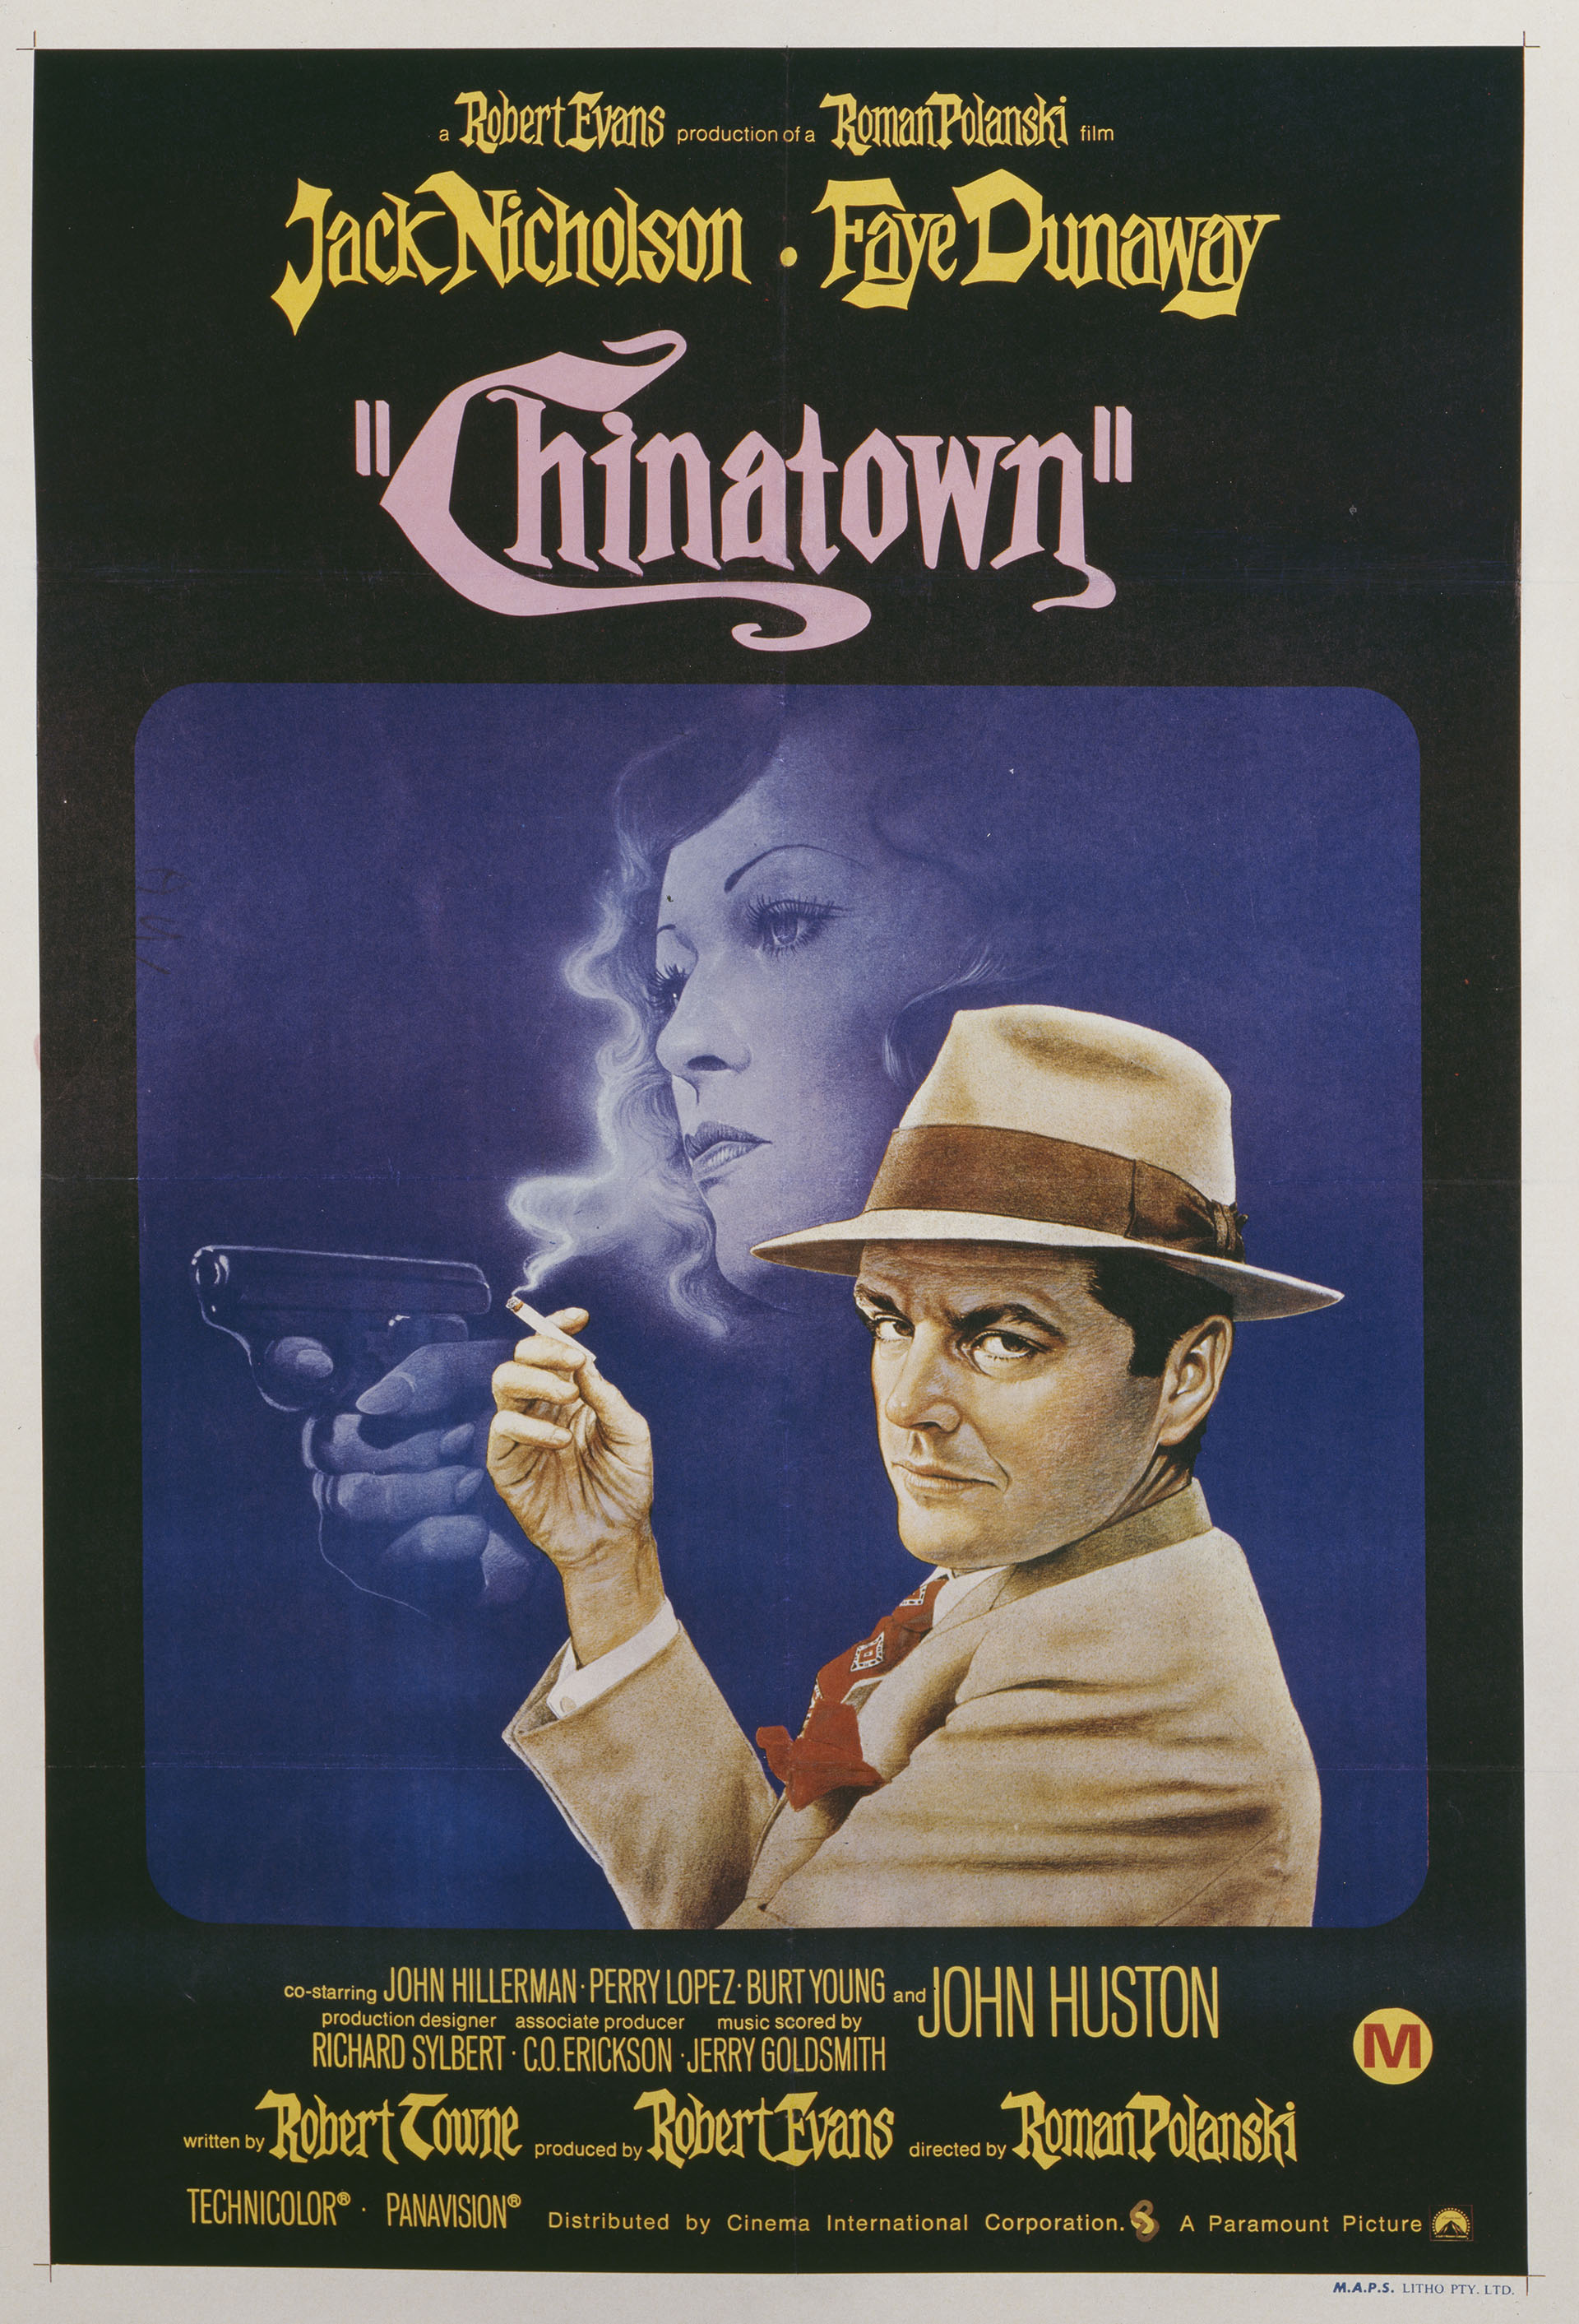 En 1974, Polanski estrenó Chinatown protagonizada por Jack Nicholson y Faye Dunaway y escrita por Robert Towne (Movie Poster Image Art/Getty Images)